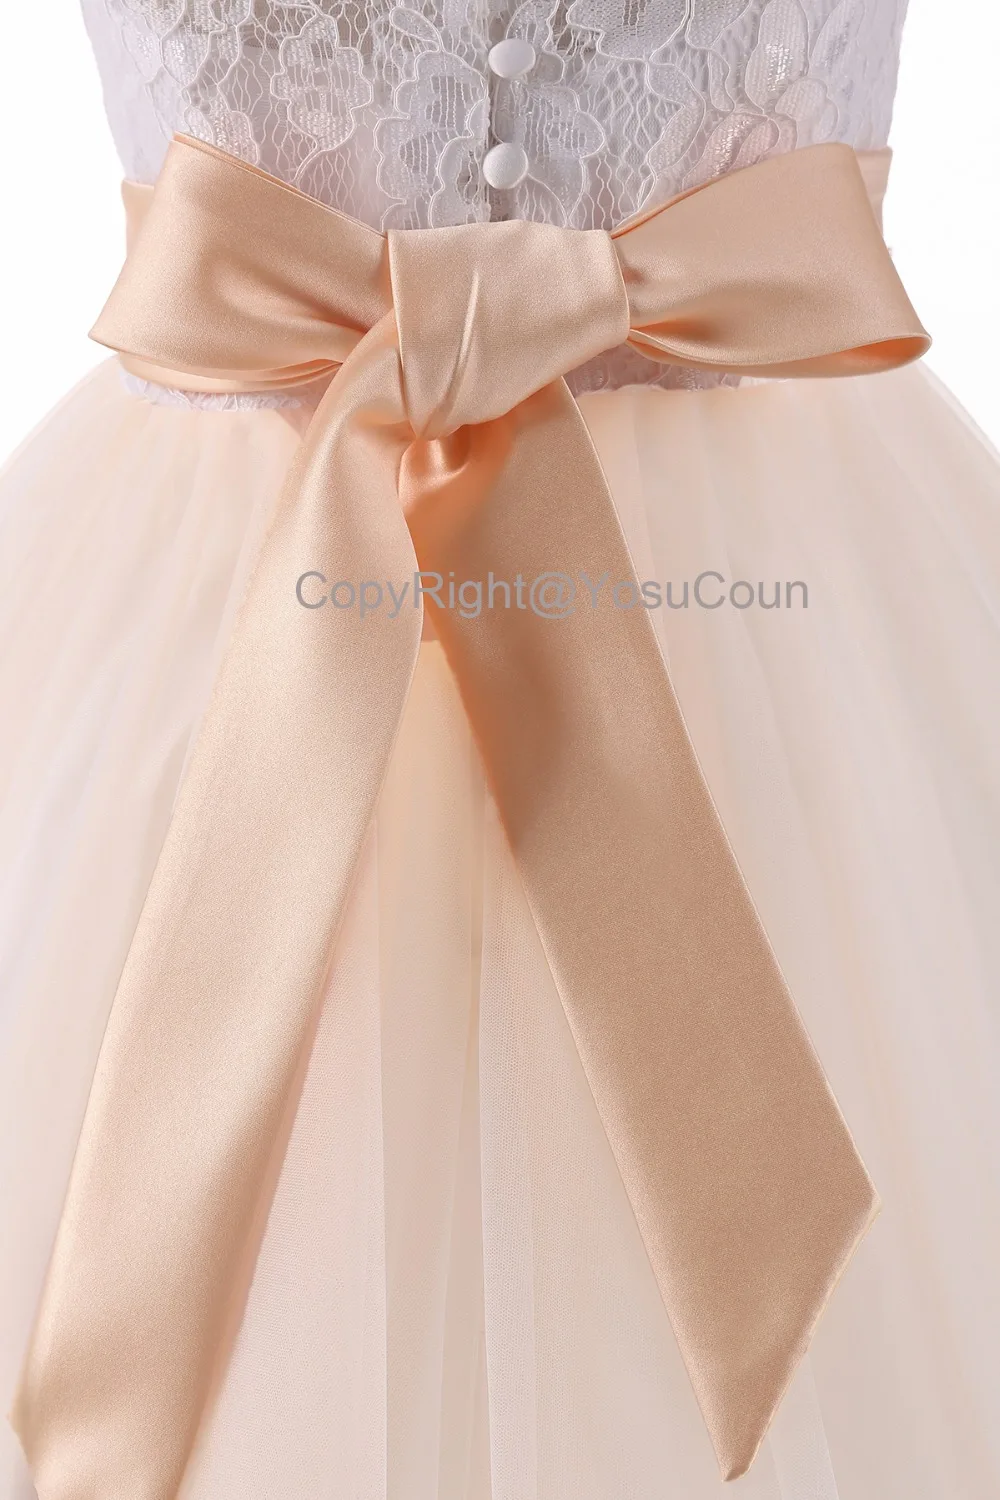 Благородное платье принцессы вечерние платья для девочек элегантное Пышное Бальное платье для маленьких девочек, праздничное платье для детей, праздничное платье для маленьких девочек, YCBG1813